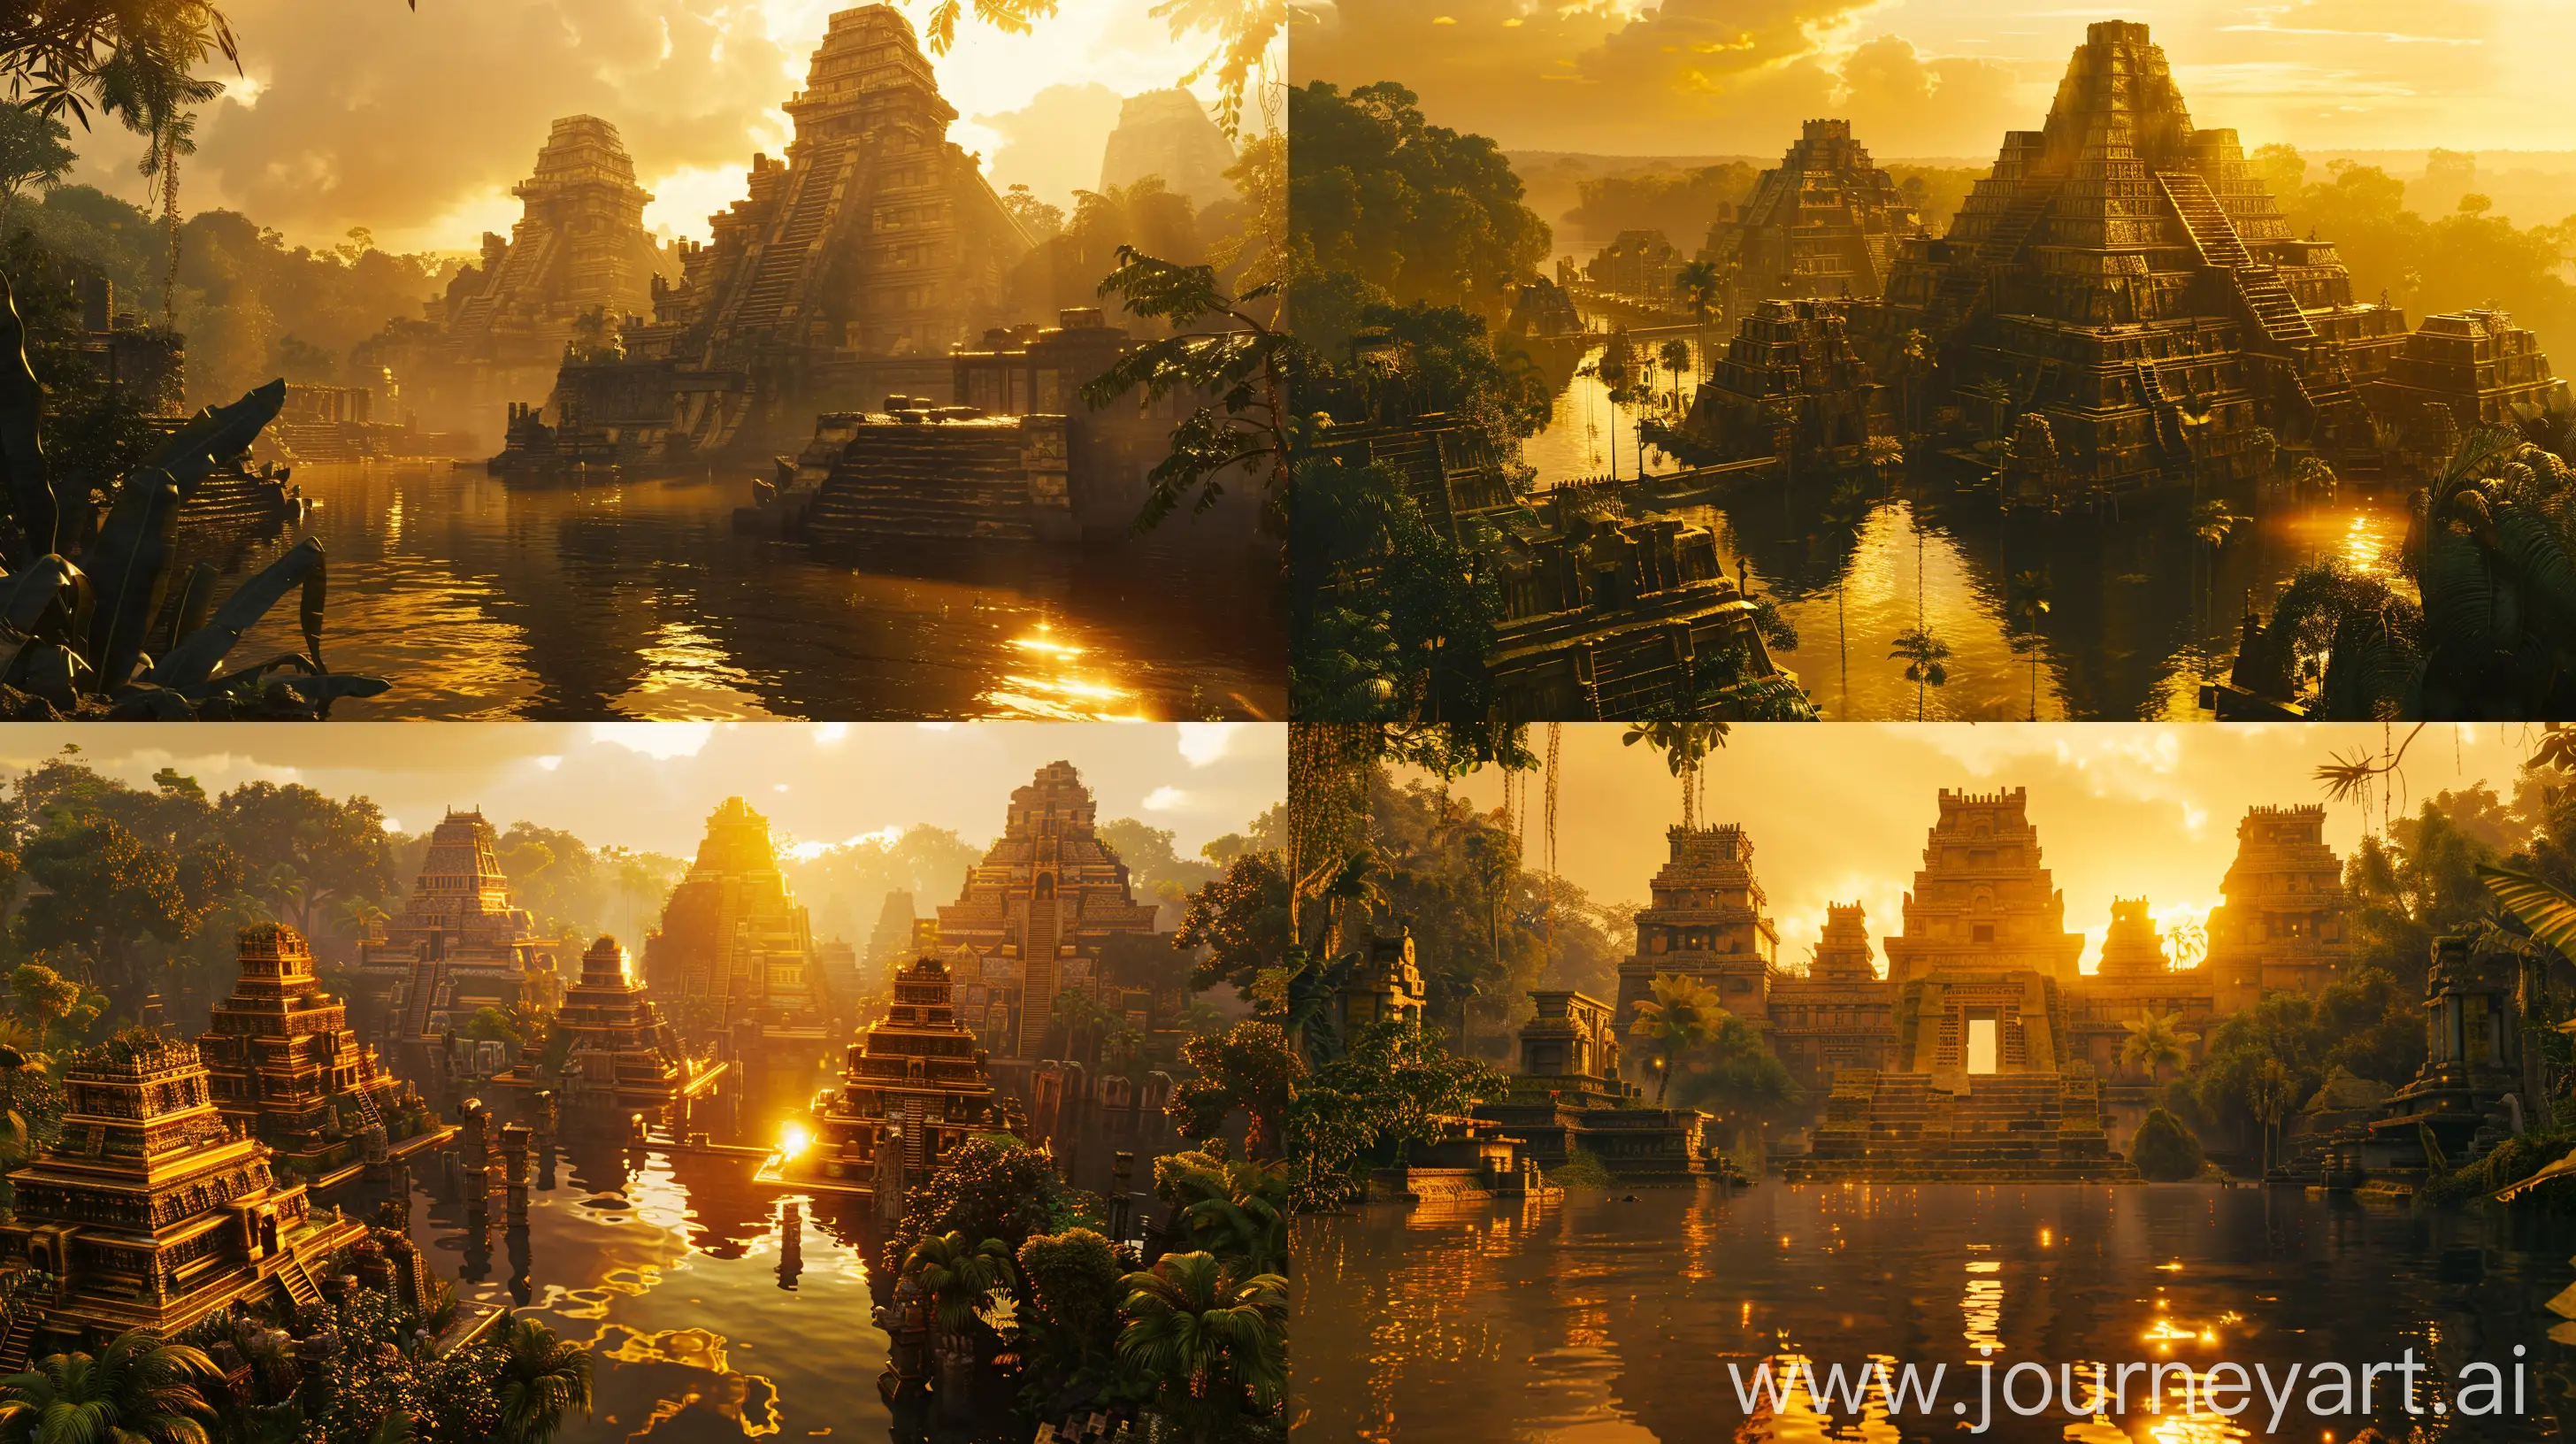 Exploring-El-Dorado-Immersive-Cinematic-Journey-Through-Ancient-Amazon-City